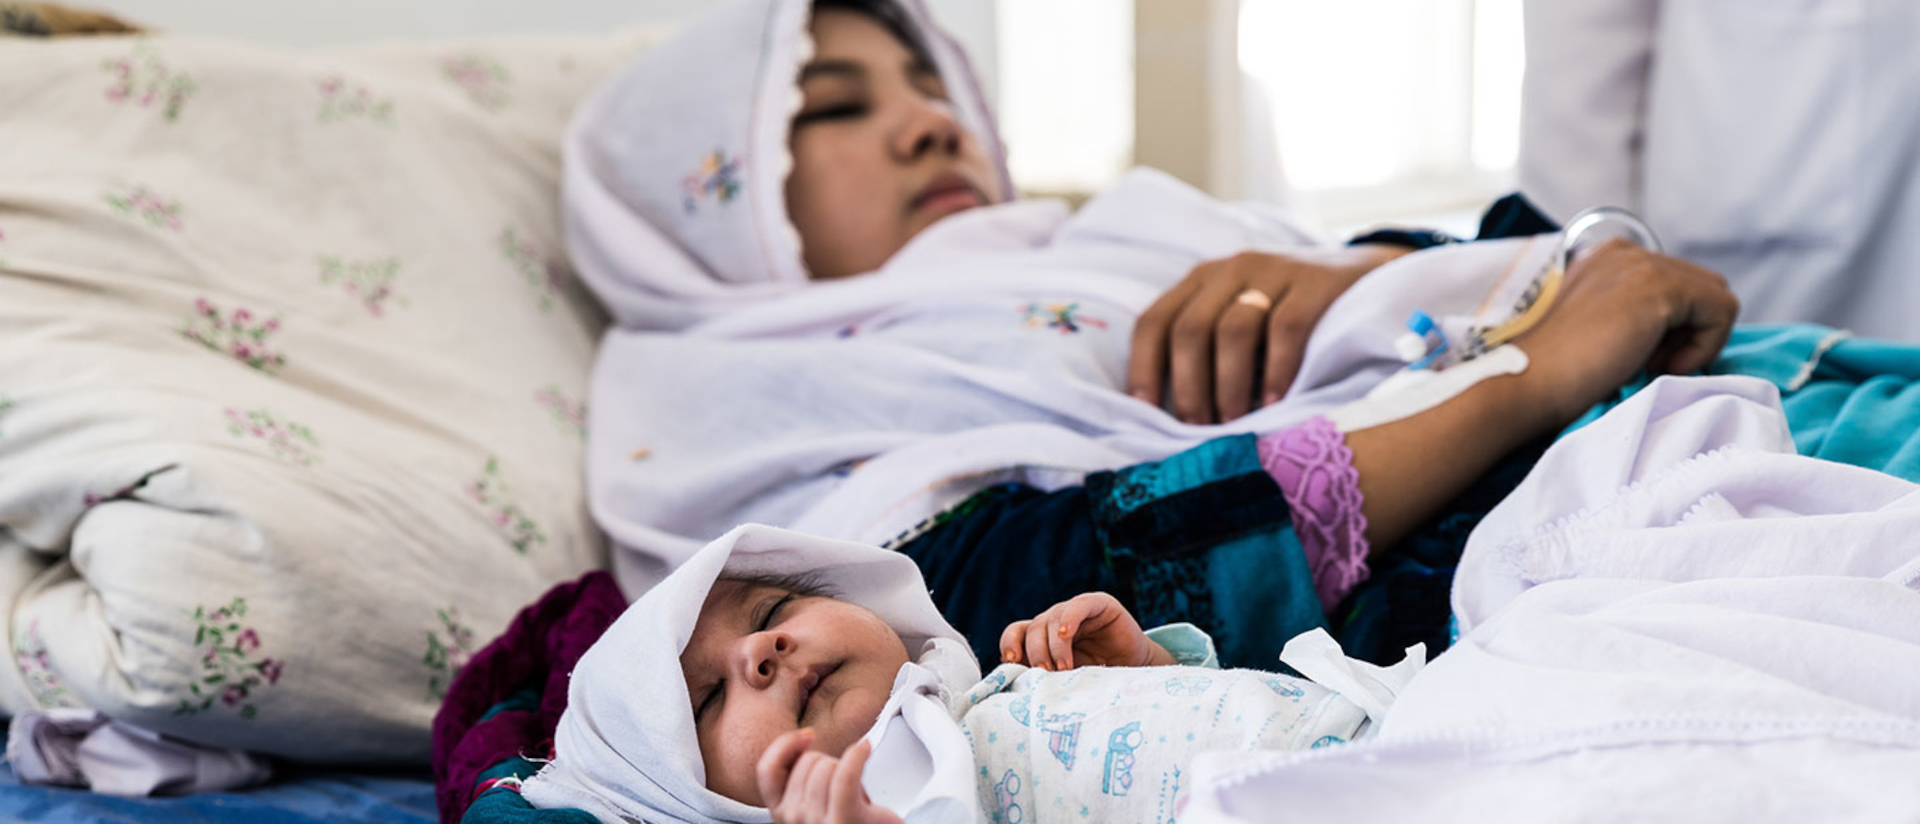 Zum Glück gesund! Mutter und Kind in einem Spital-Projekt in Afghanistan.